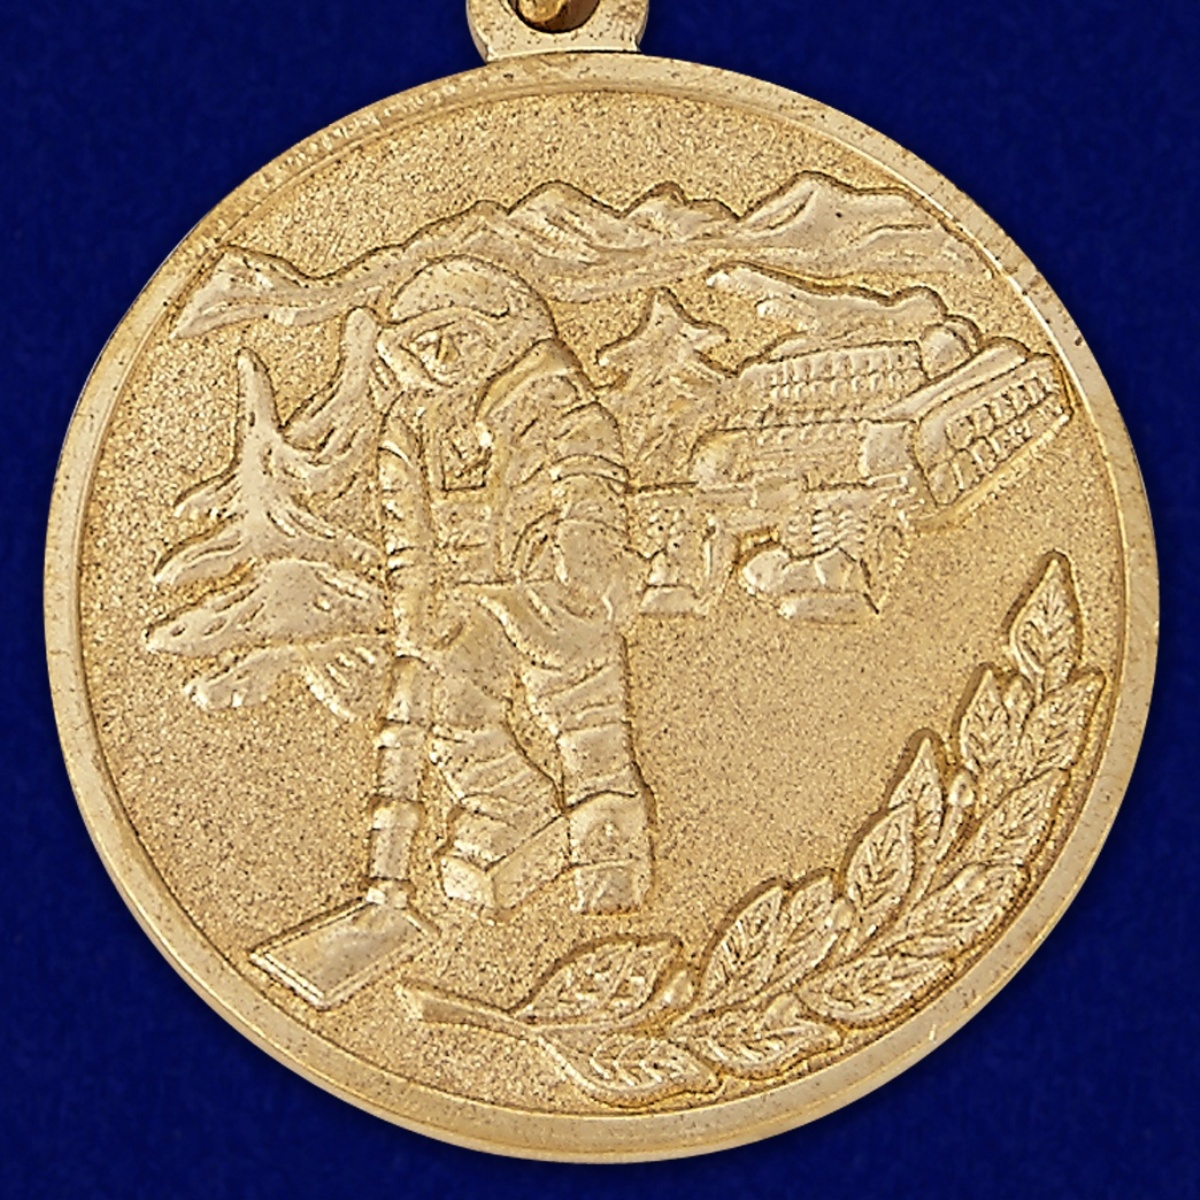 Медаль МО РФ "За разминирование" в наградном футляре 